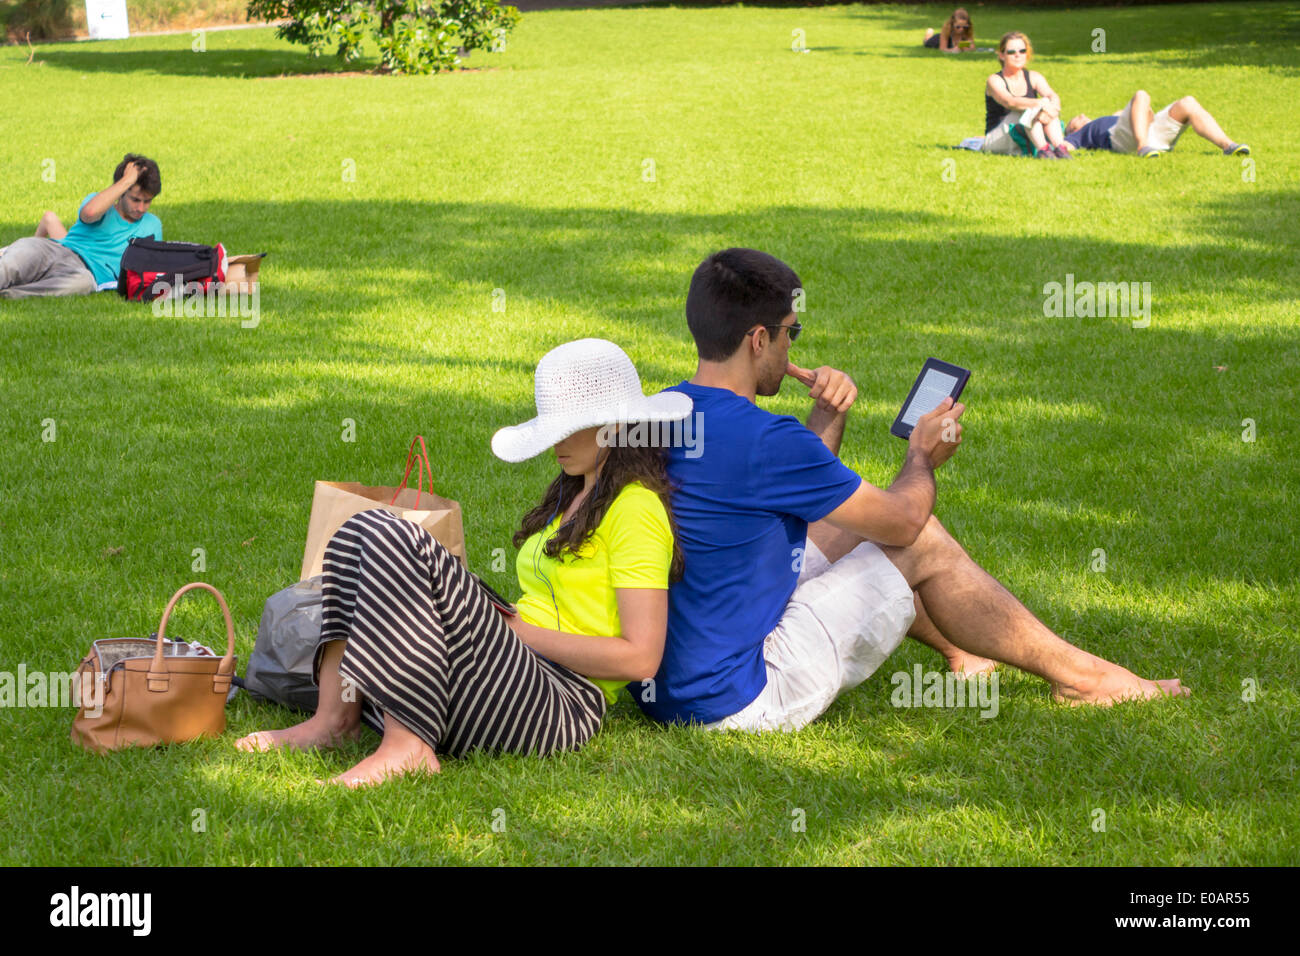 Sydney Australie,Royal Botanic Gardens,homme hommes,femme femmes,couple,dos à dos,pelouse,assis,en,utilisant,tablette,parc,AU140309174 Banque D'Images